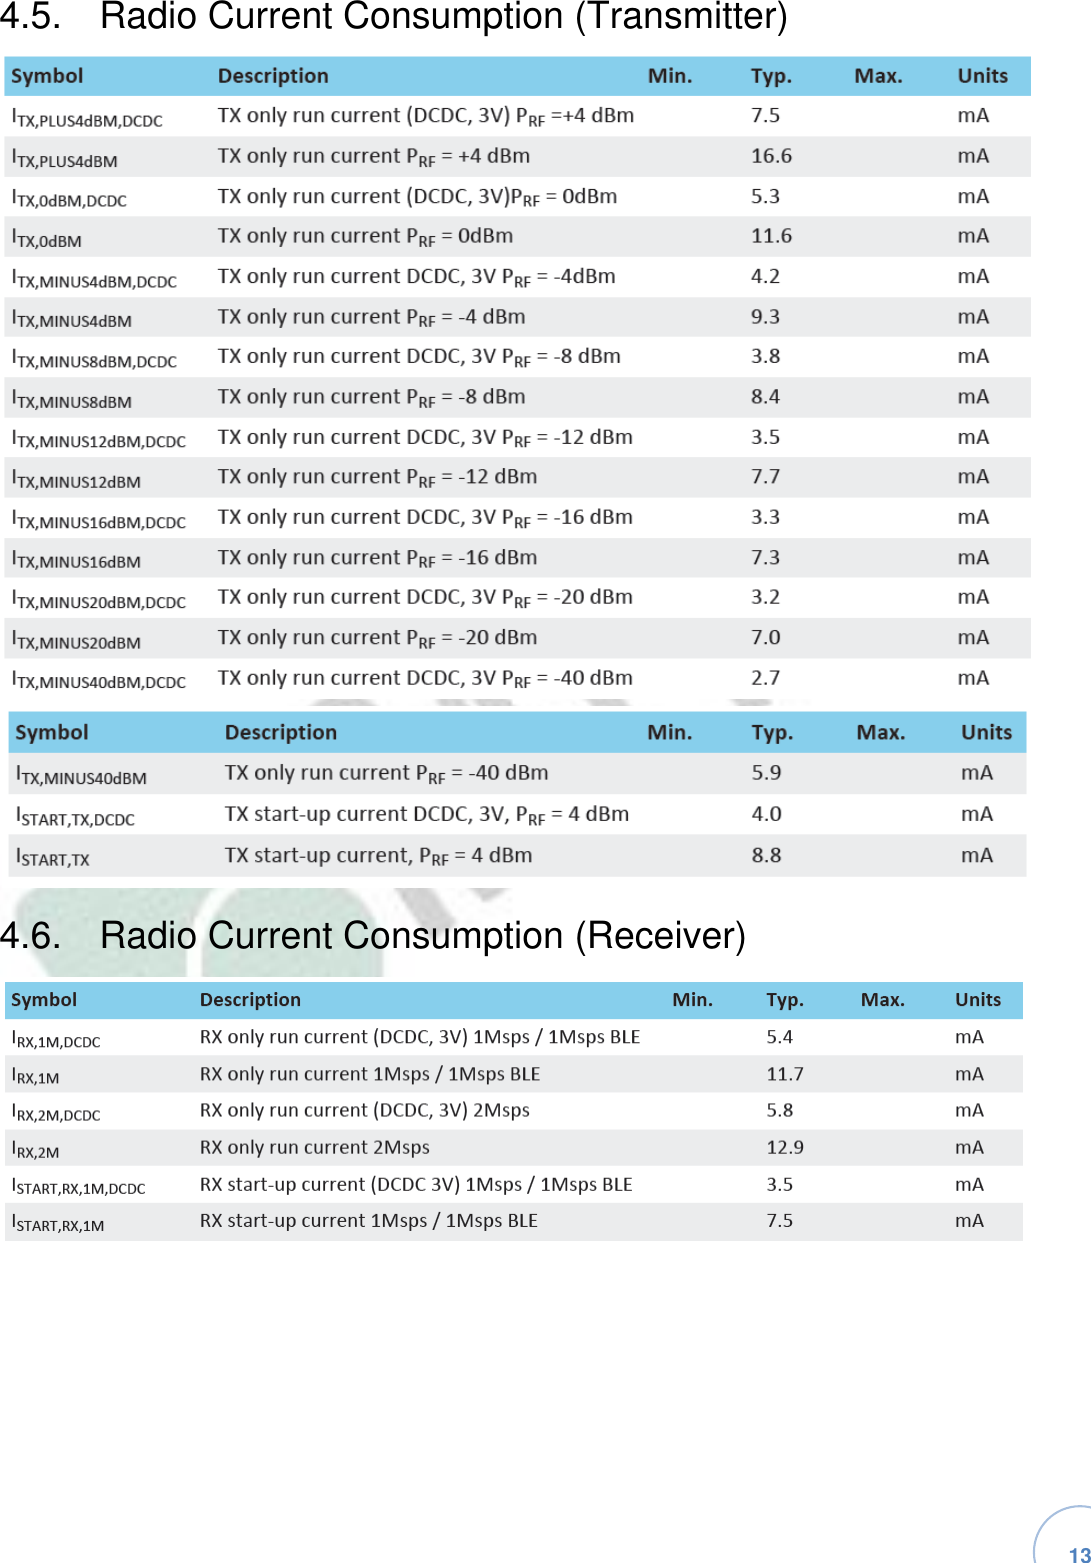   13 4.5.  Radio Current Consumption (Transmitter)4.6.  Radio Current Consumption (Receiver)